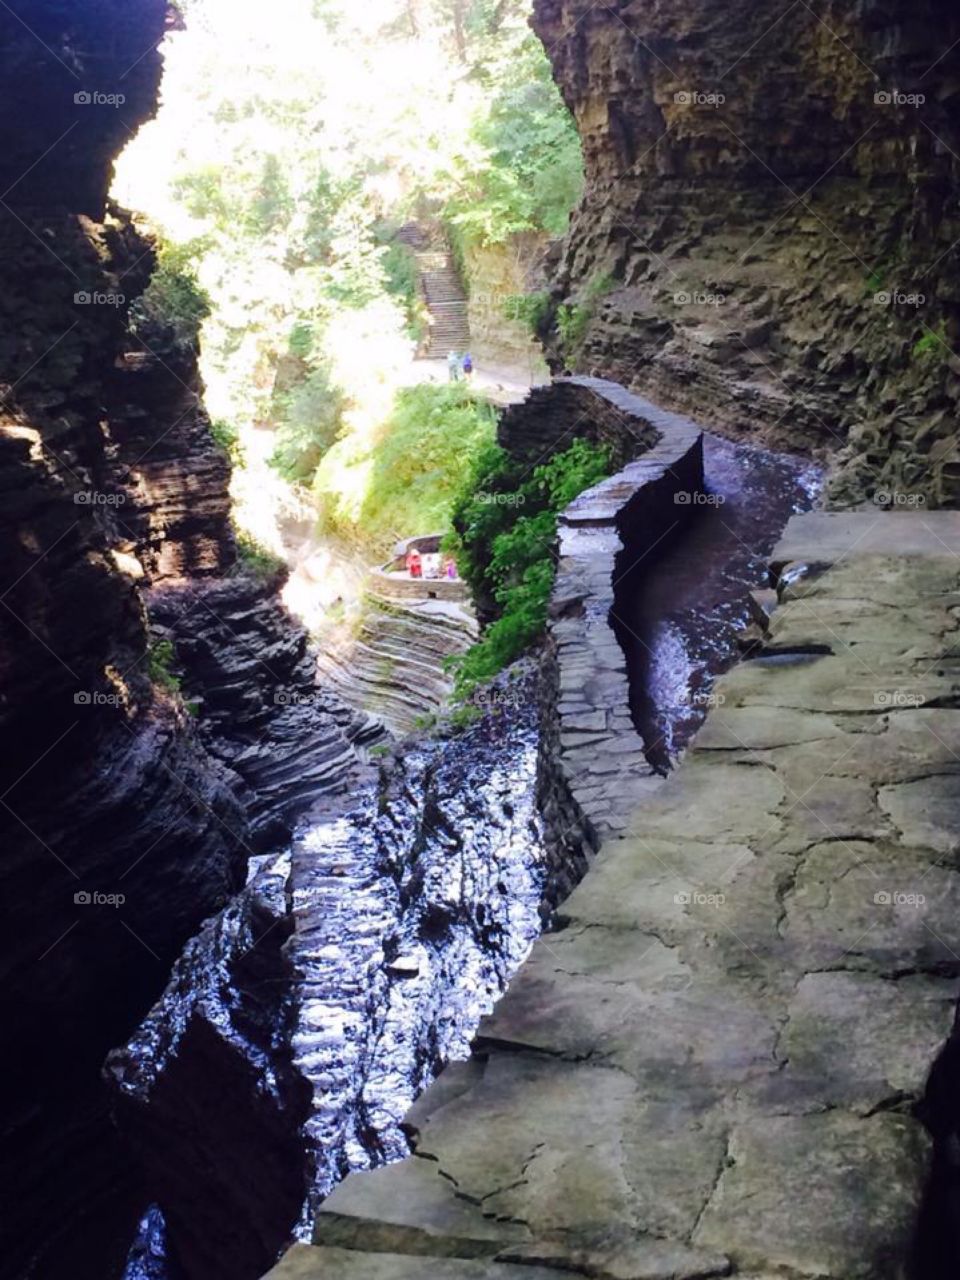 Hiking trails thru gorges in Watkins Glen New York State Park.  